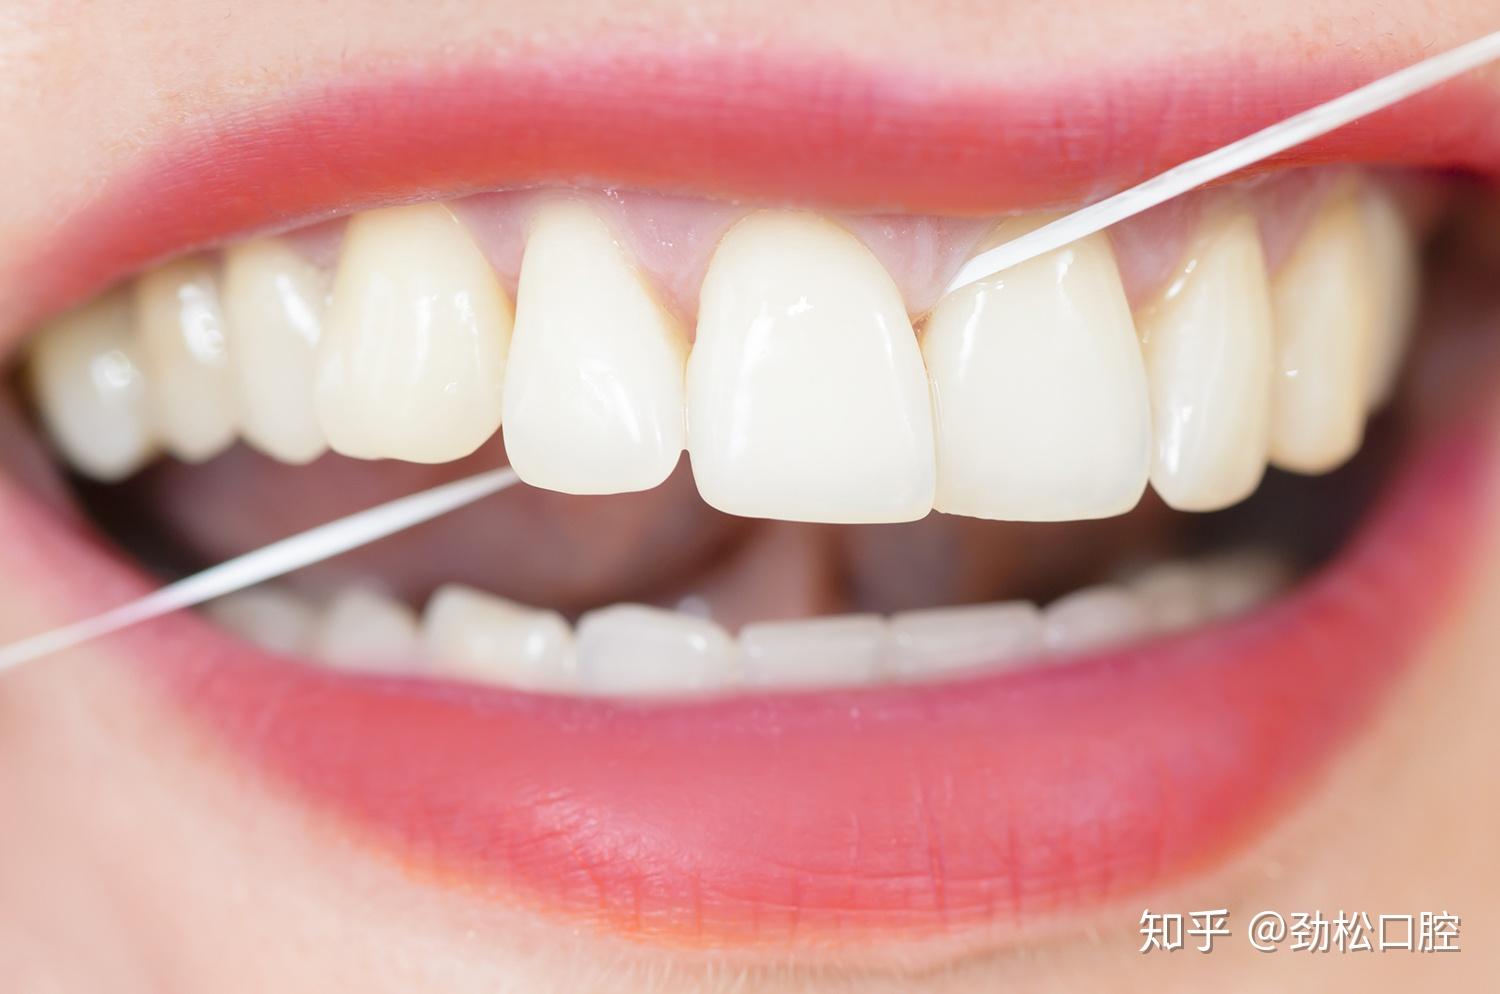 1个牙缝有问题，2颗牙齿被牵连——邻面龋修补 - 知乎